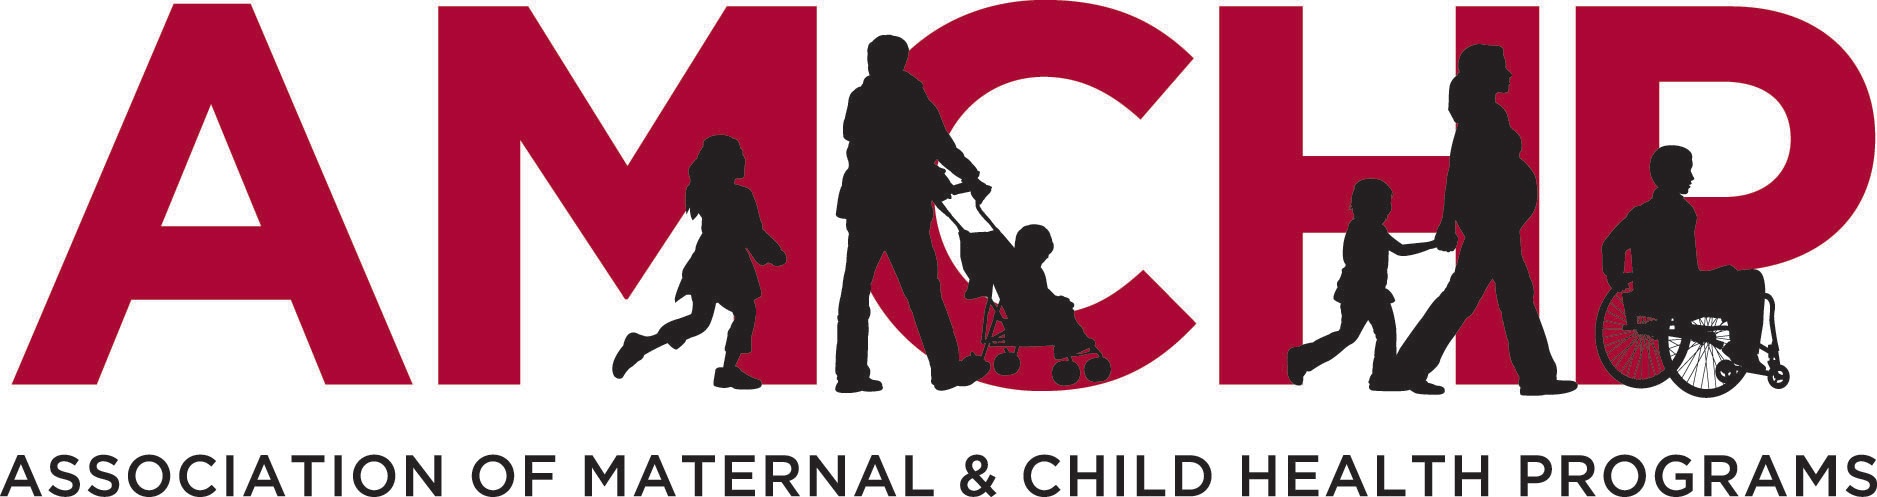 AMCHP Logo image